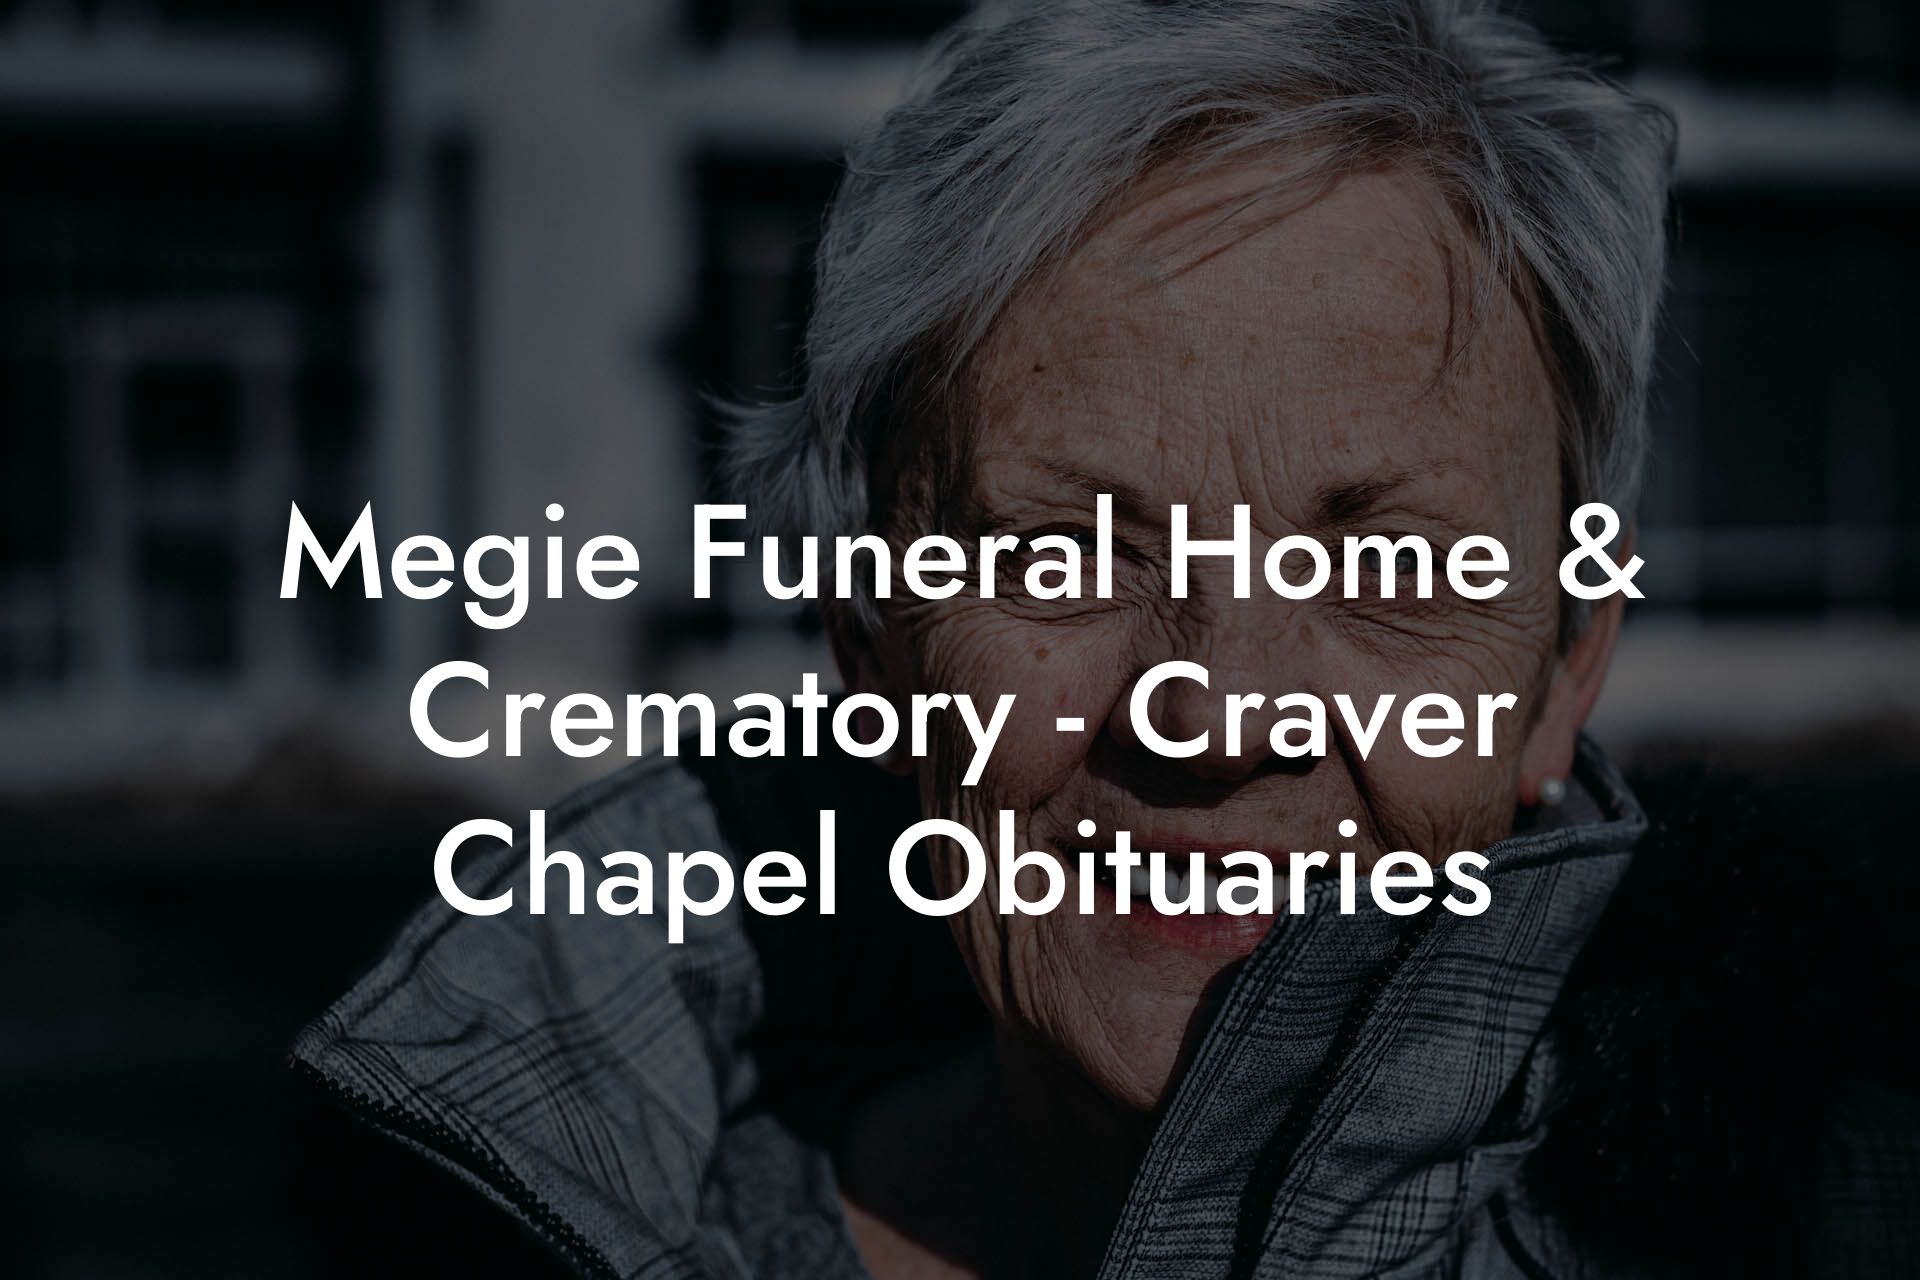 Megie Funeral Home & Crematory - Craver Chapel Obituaries